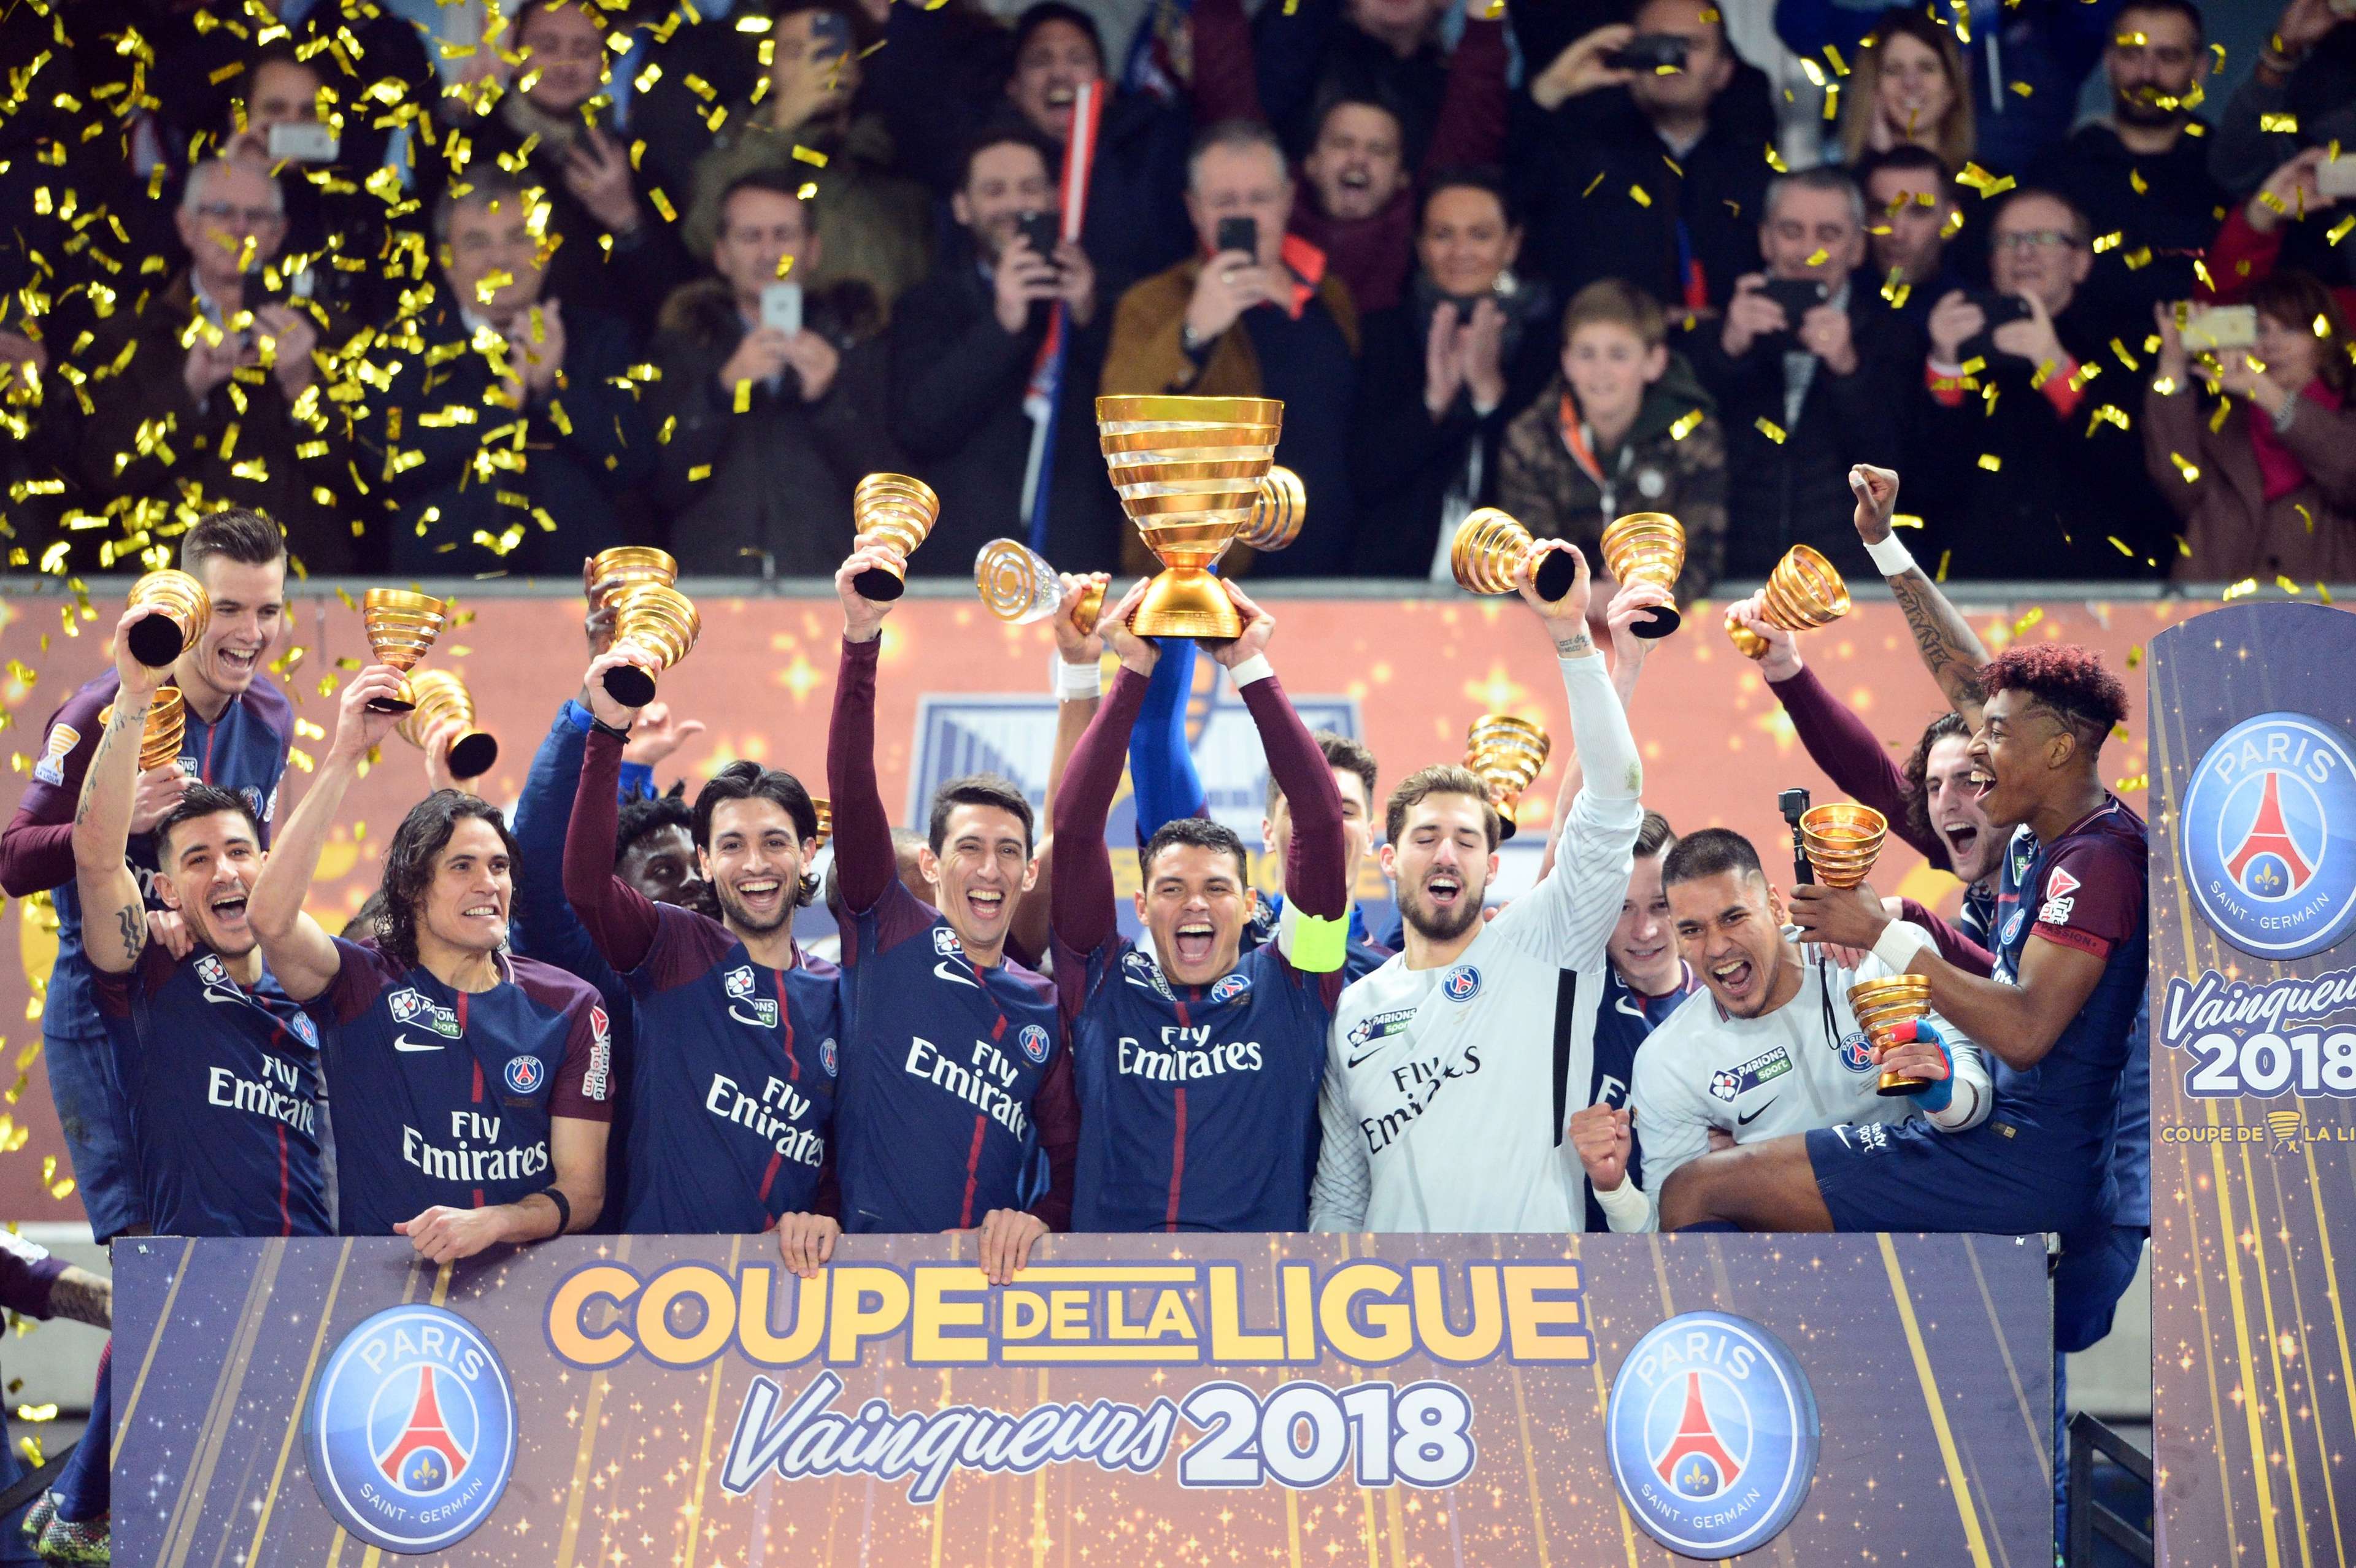 Paris Saint-Germain : Coupe de la Ligue Winners 2018